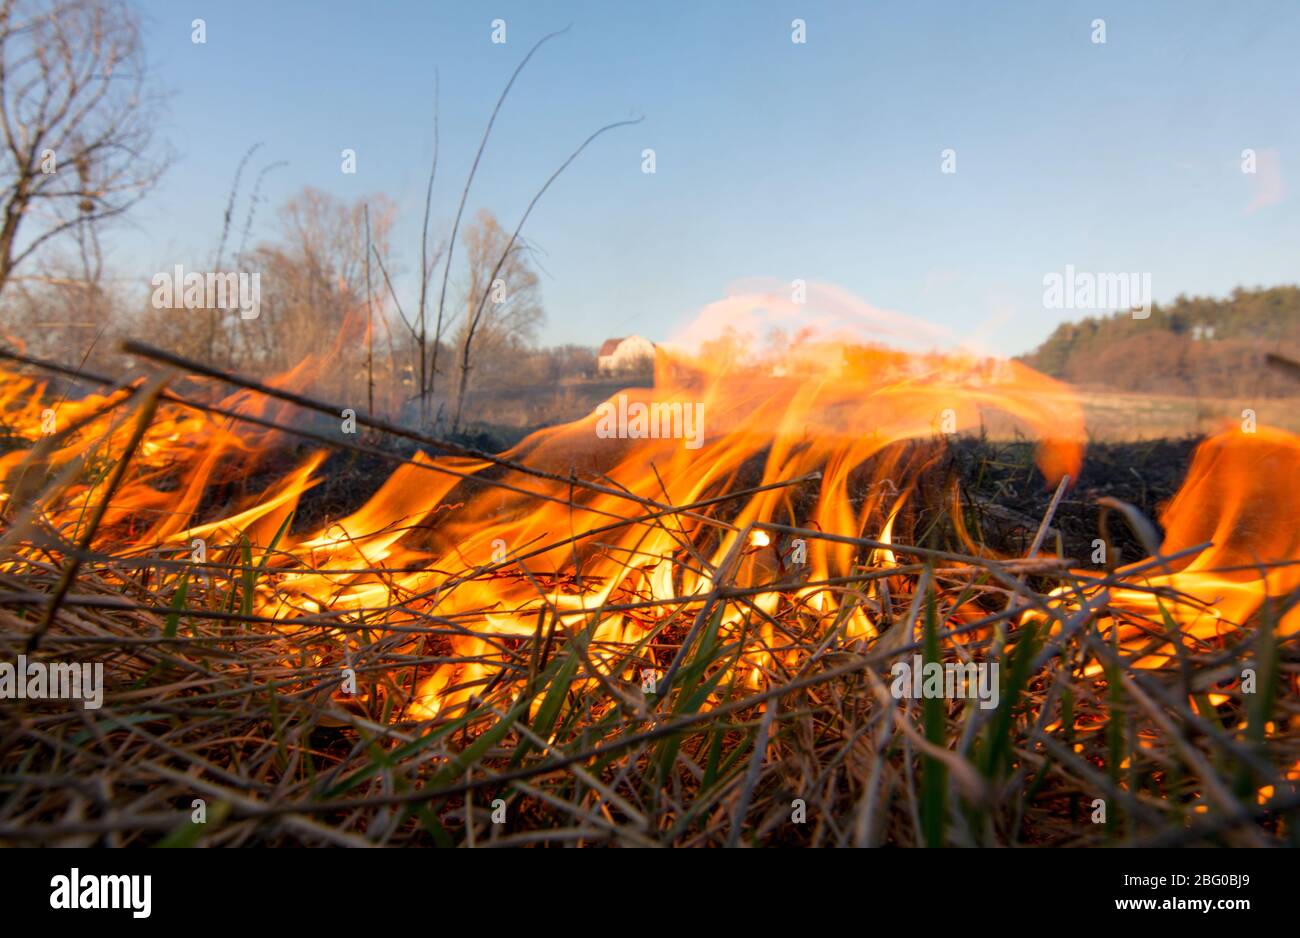 Ukraine Massives Feuer im Wald, trockene Graswege und Wald im Feuer Katastrophe, ökologische Katastrophe Stockfoto